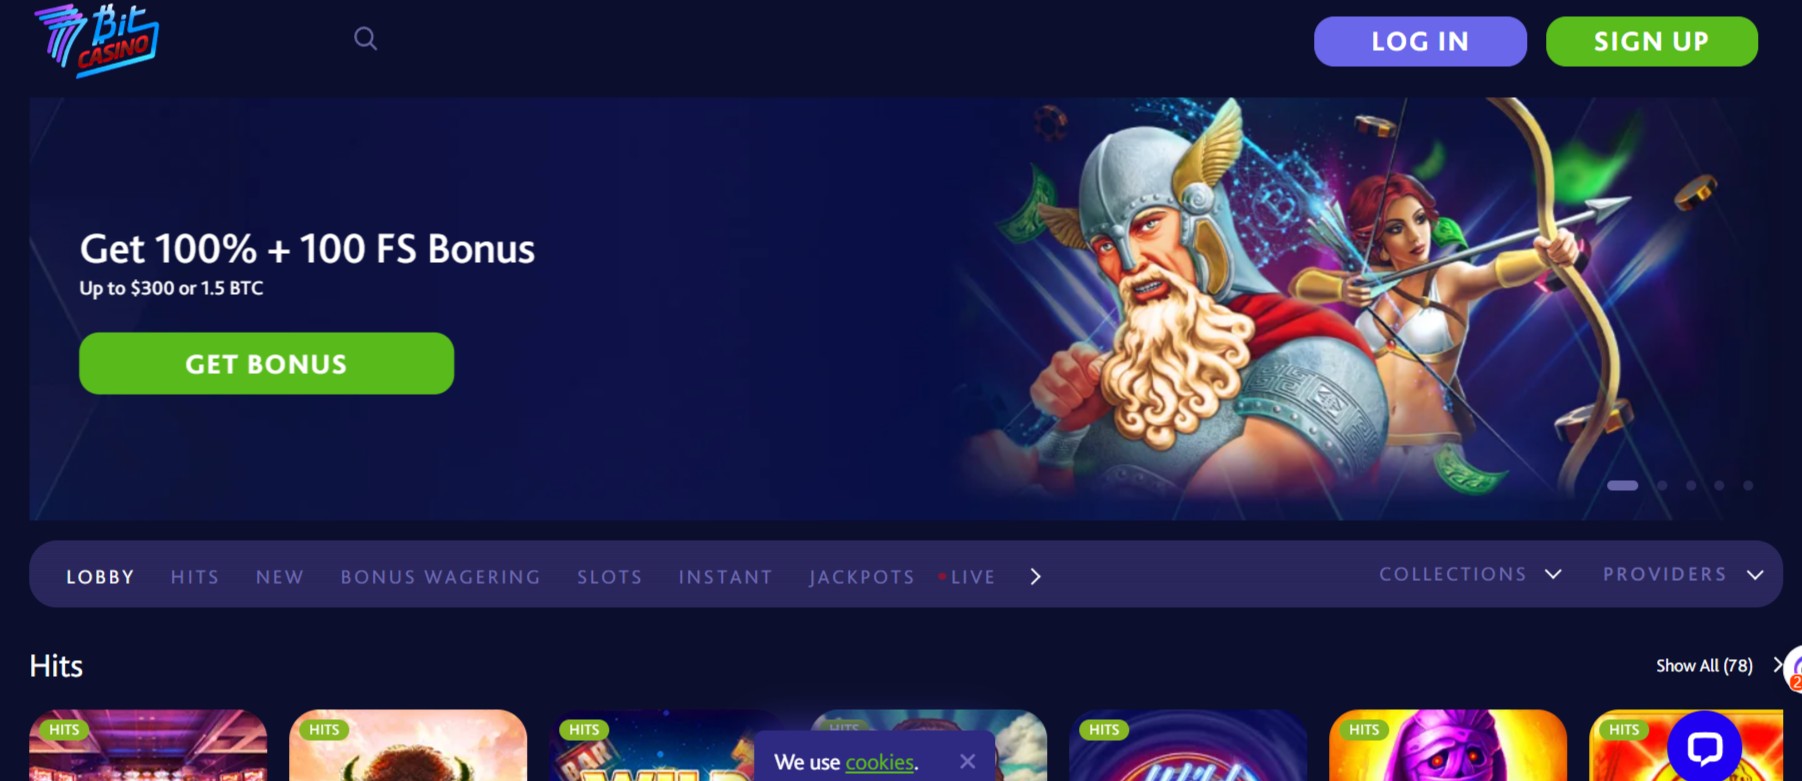 7bit casino website homepage screenshot